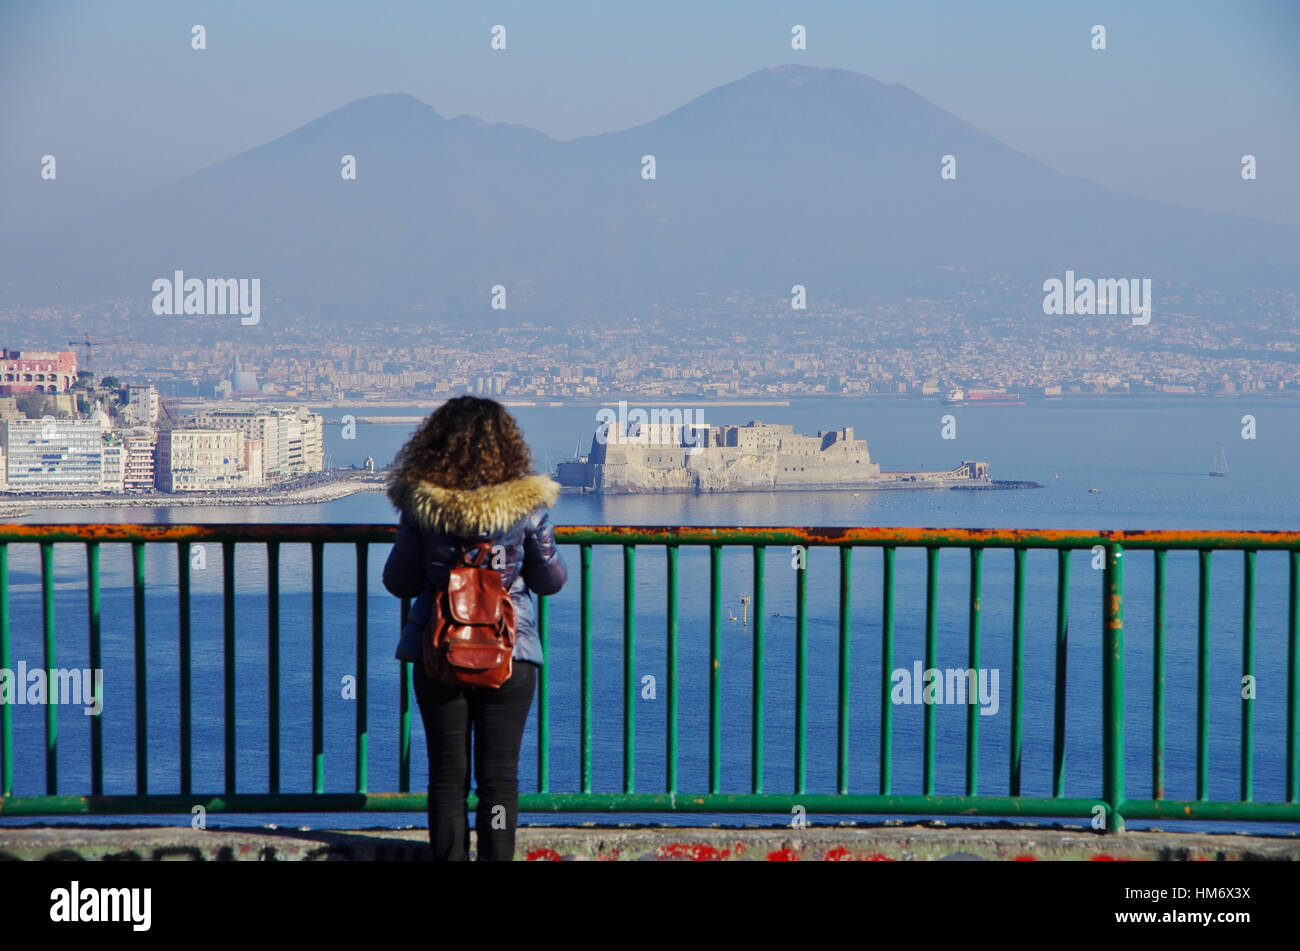 Vue aérienne de Naples et son golfe, avec le Vésuve en arrière-plan. Une jeune femme debout sur un balcon tout en regardant le paysage. Des vêtements d'hiver. Banque D'Images